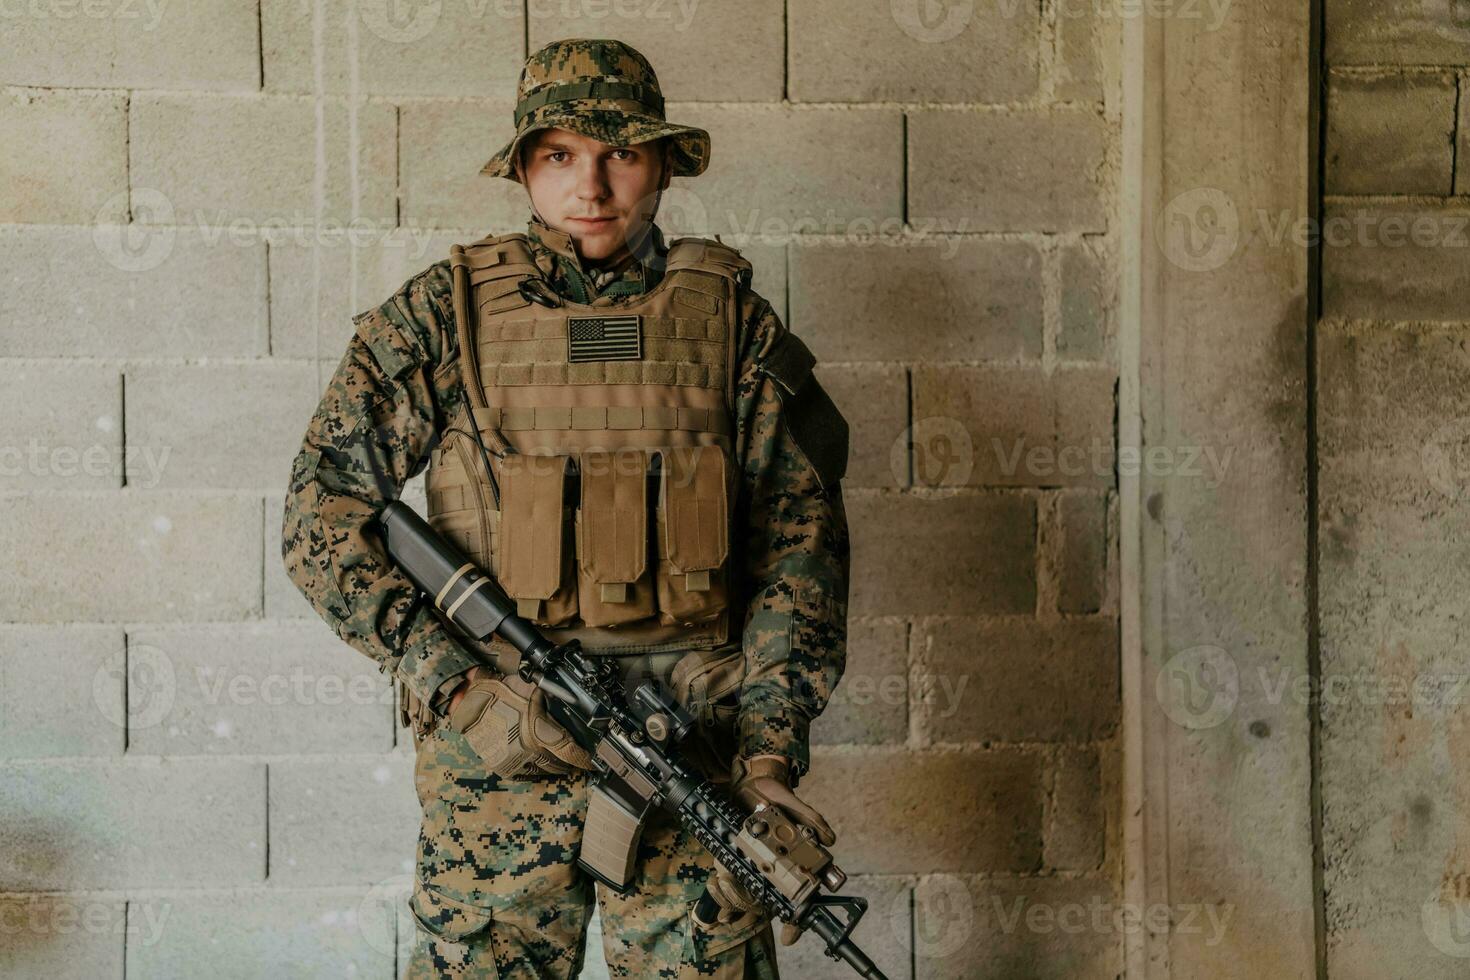 een soldaat in uniform staat in voorkant van een steen muur in vol oorlog uitrusting voorbereidingen treffen voor strijd foto